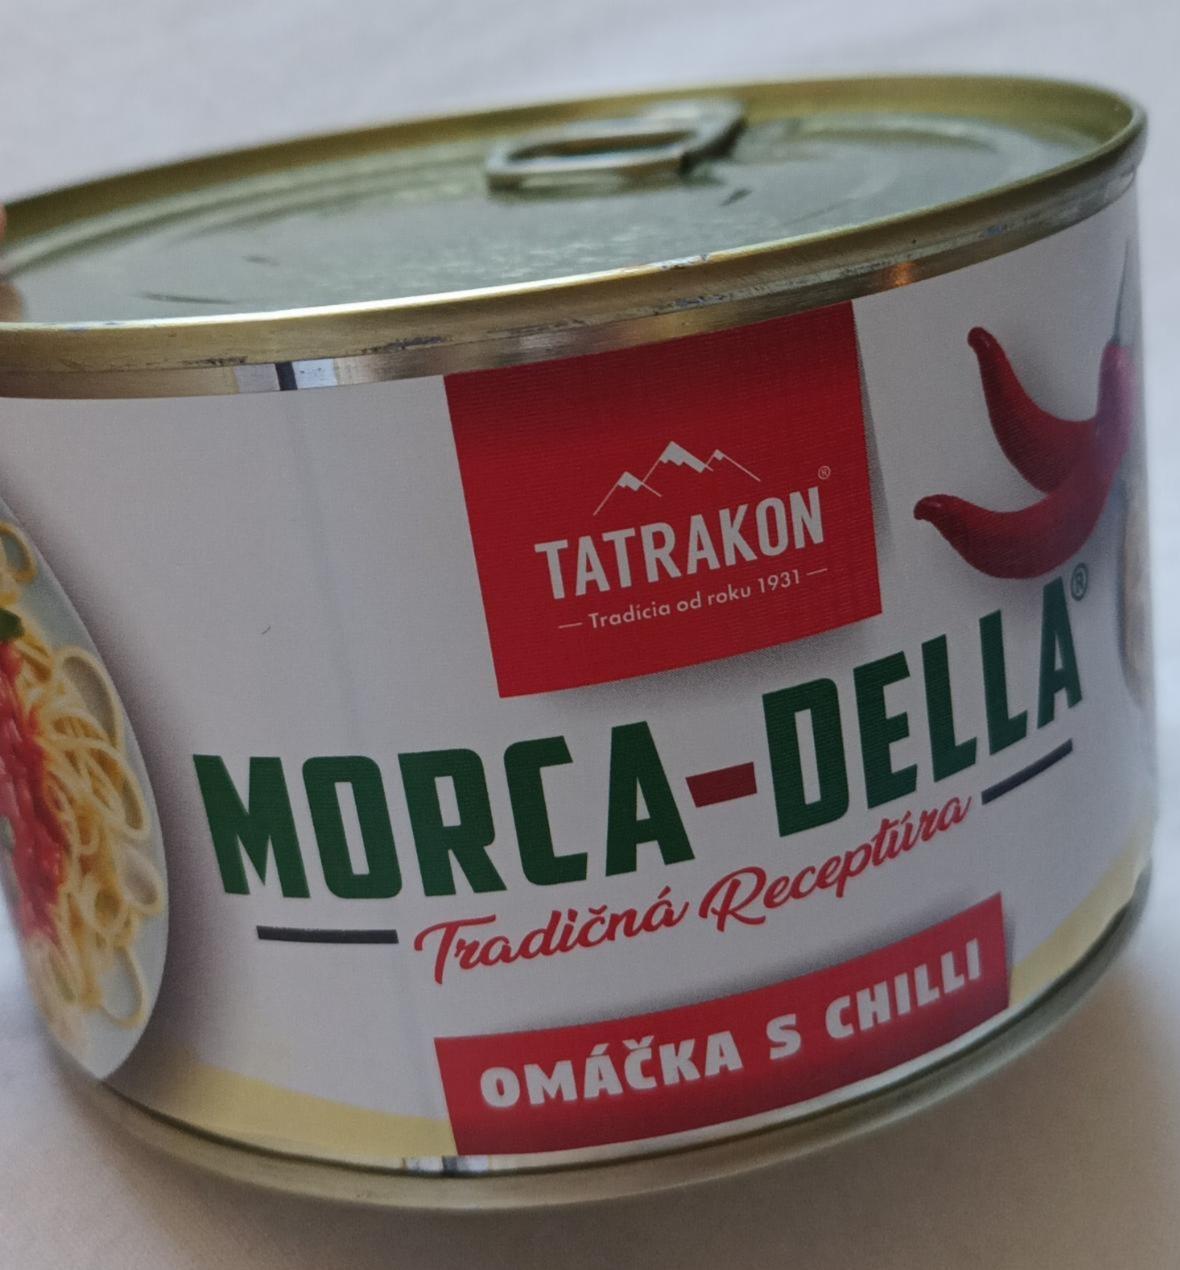 Fotografie - Morca-Della Tradičná receptúra Omáčka s chilli Tatrakon